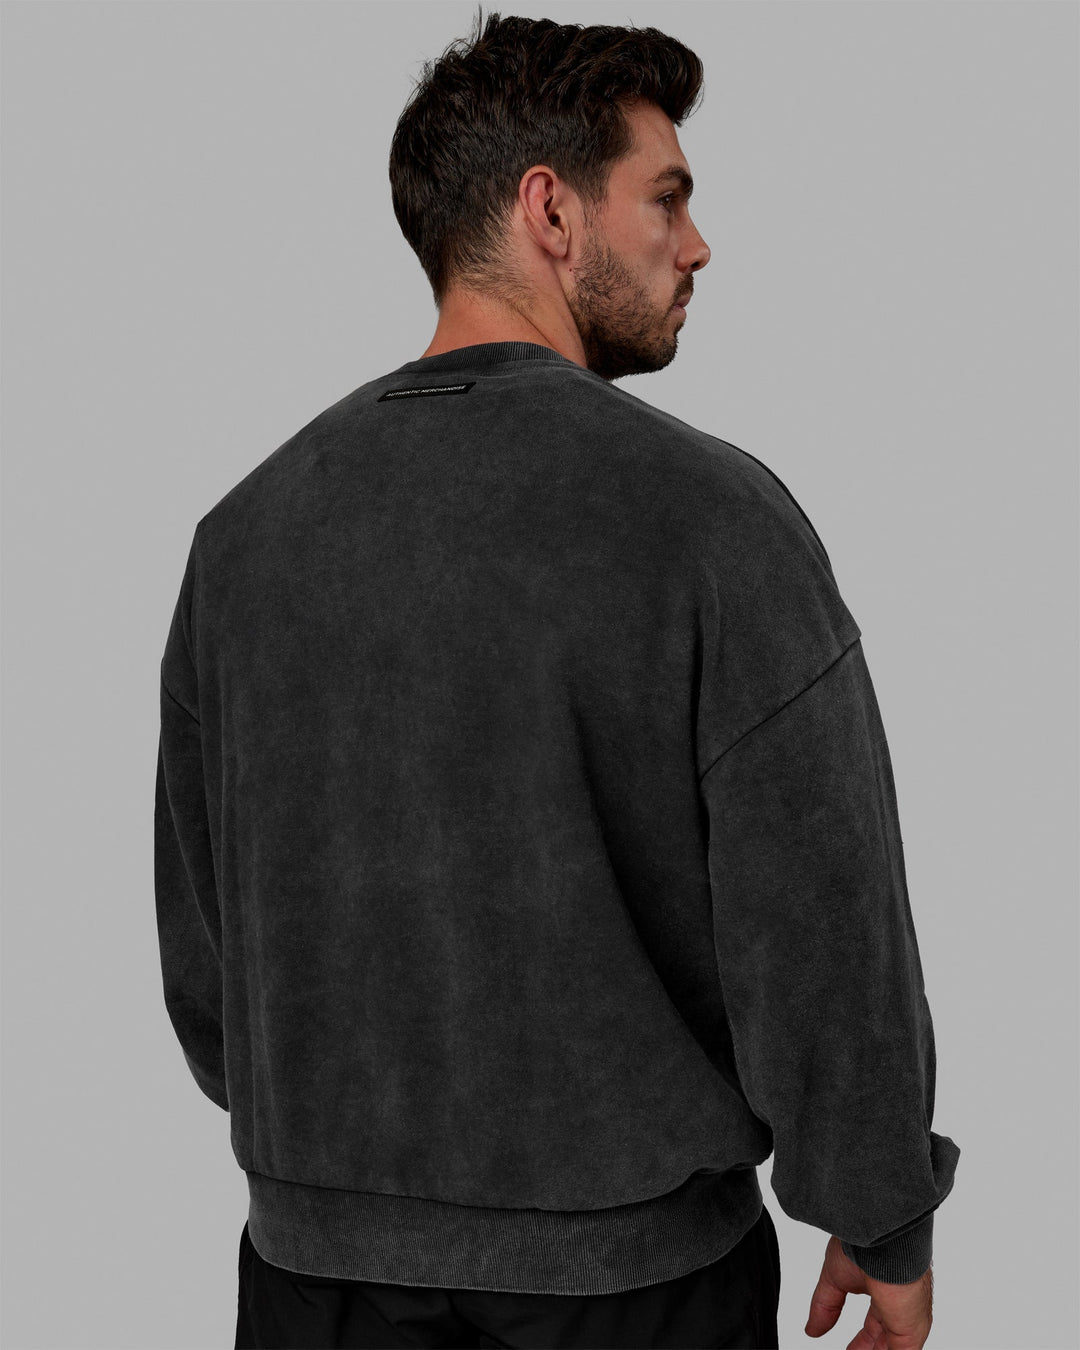 Man wearing Unisex Washed Segmented Sweater Oversize - Black